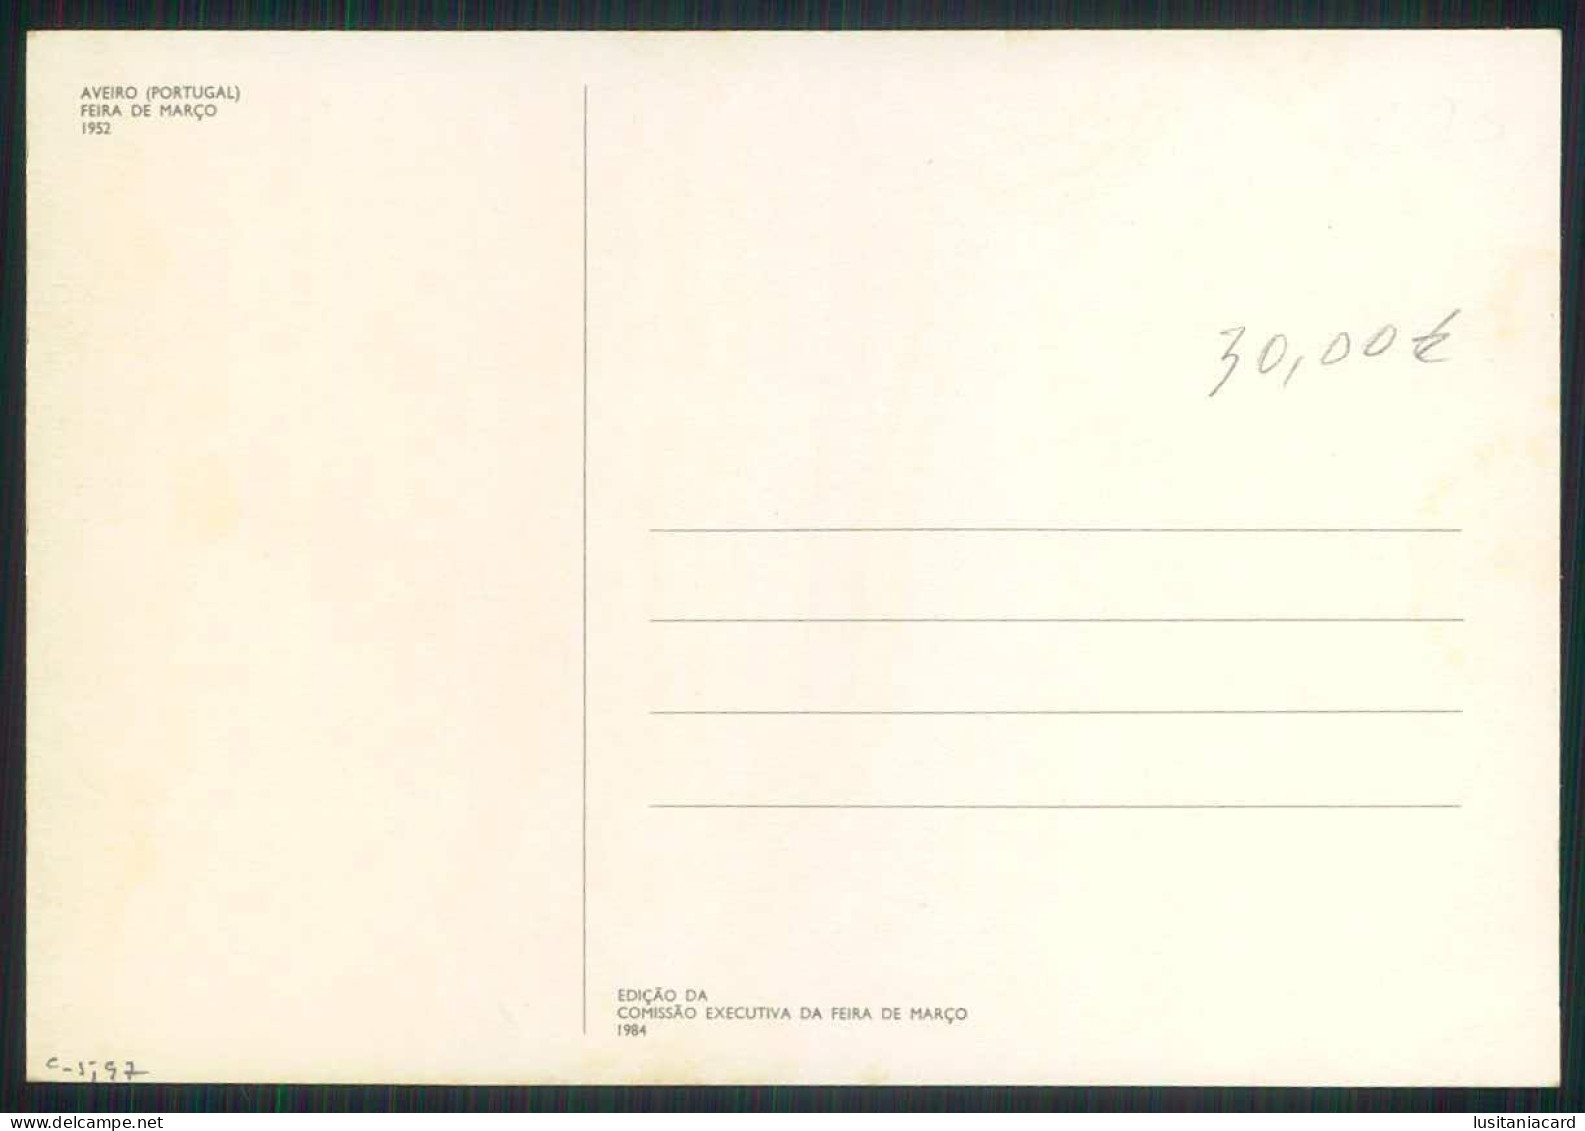 AVEIRO - FEIRAS E MERCADOS - Feira De Março 1952.( Ed. Da Comissão Executiva Da Feira De Março 1984) Carte Postale - Aveiro